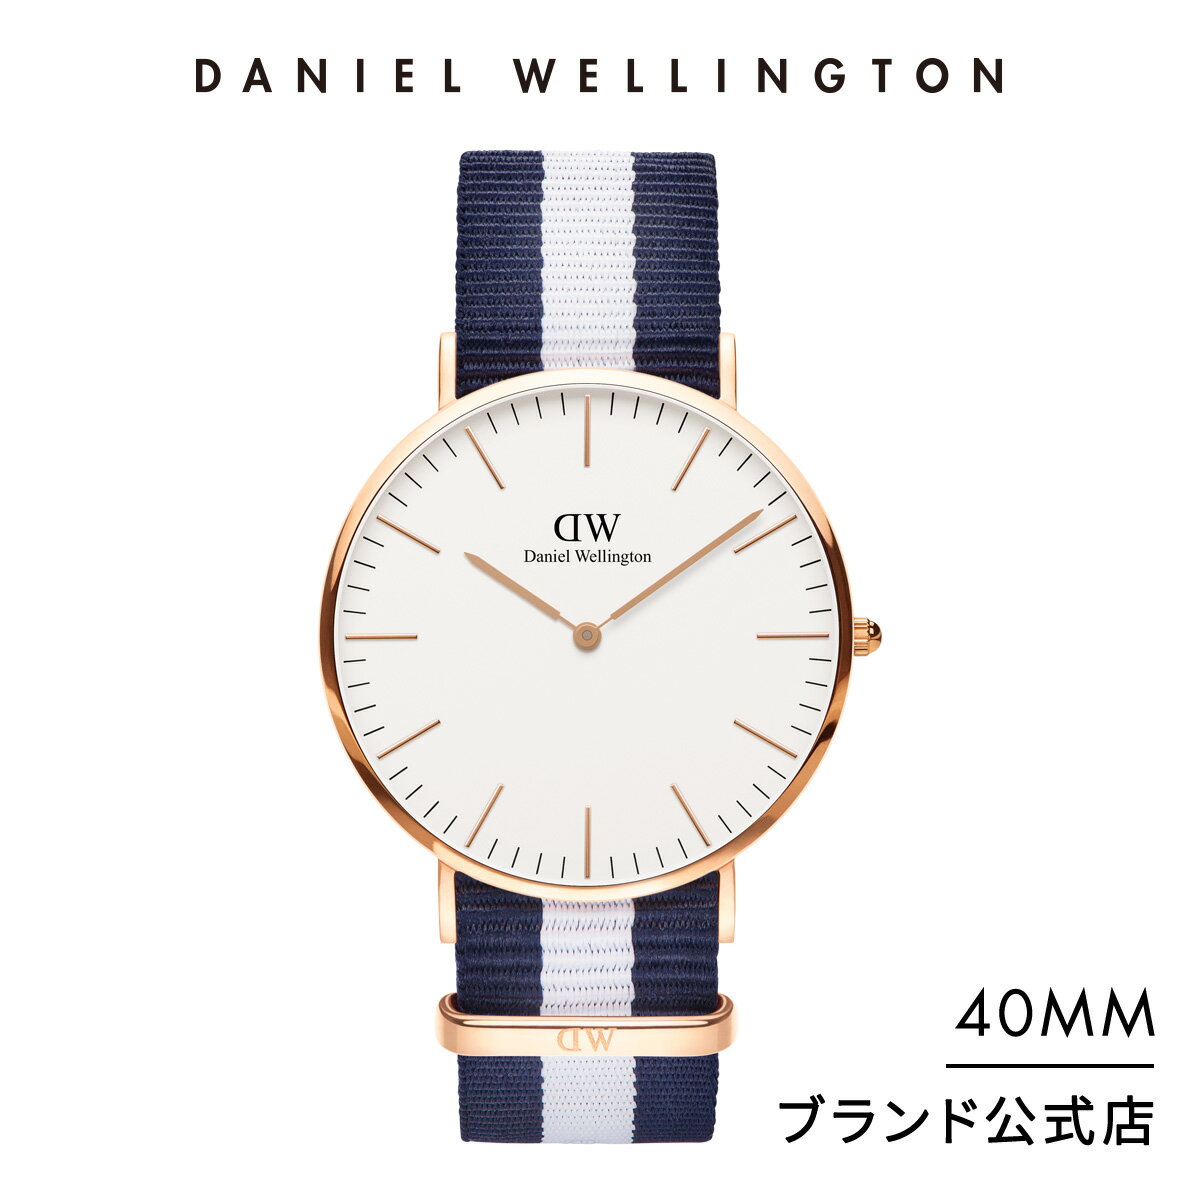 男性に人気のおしゃれなメンズ腕時計ブランド12選 21年最新版 ベストプレゼントガイド